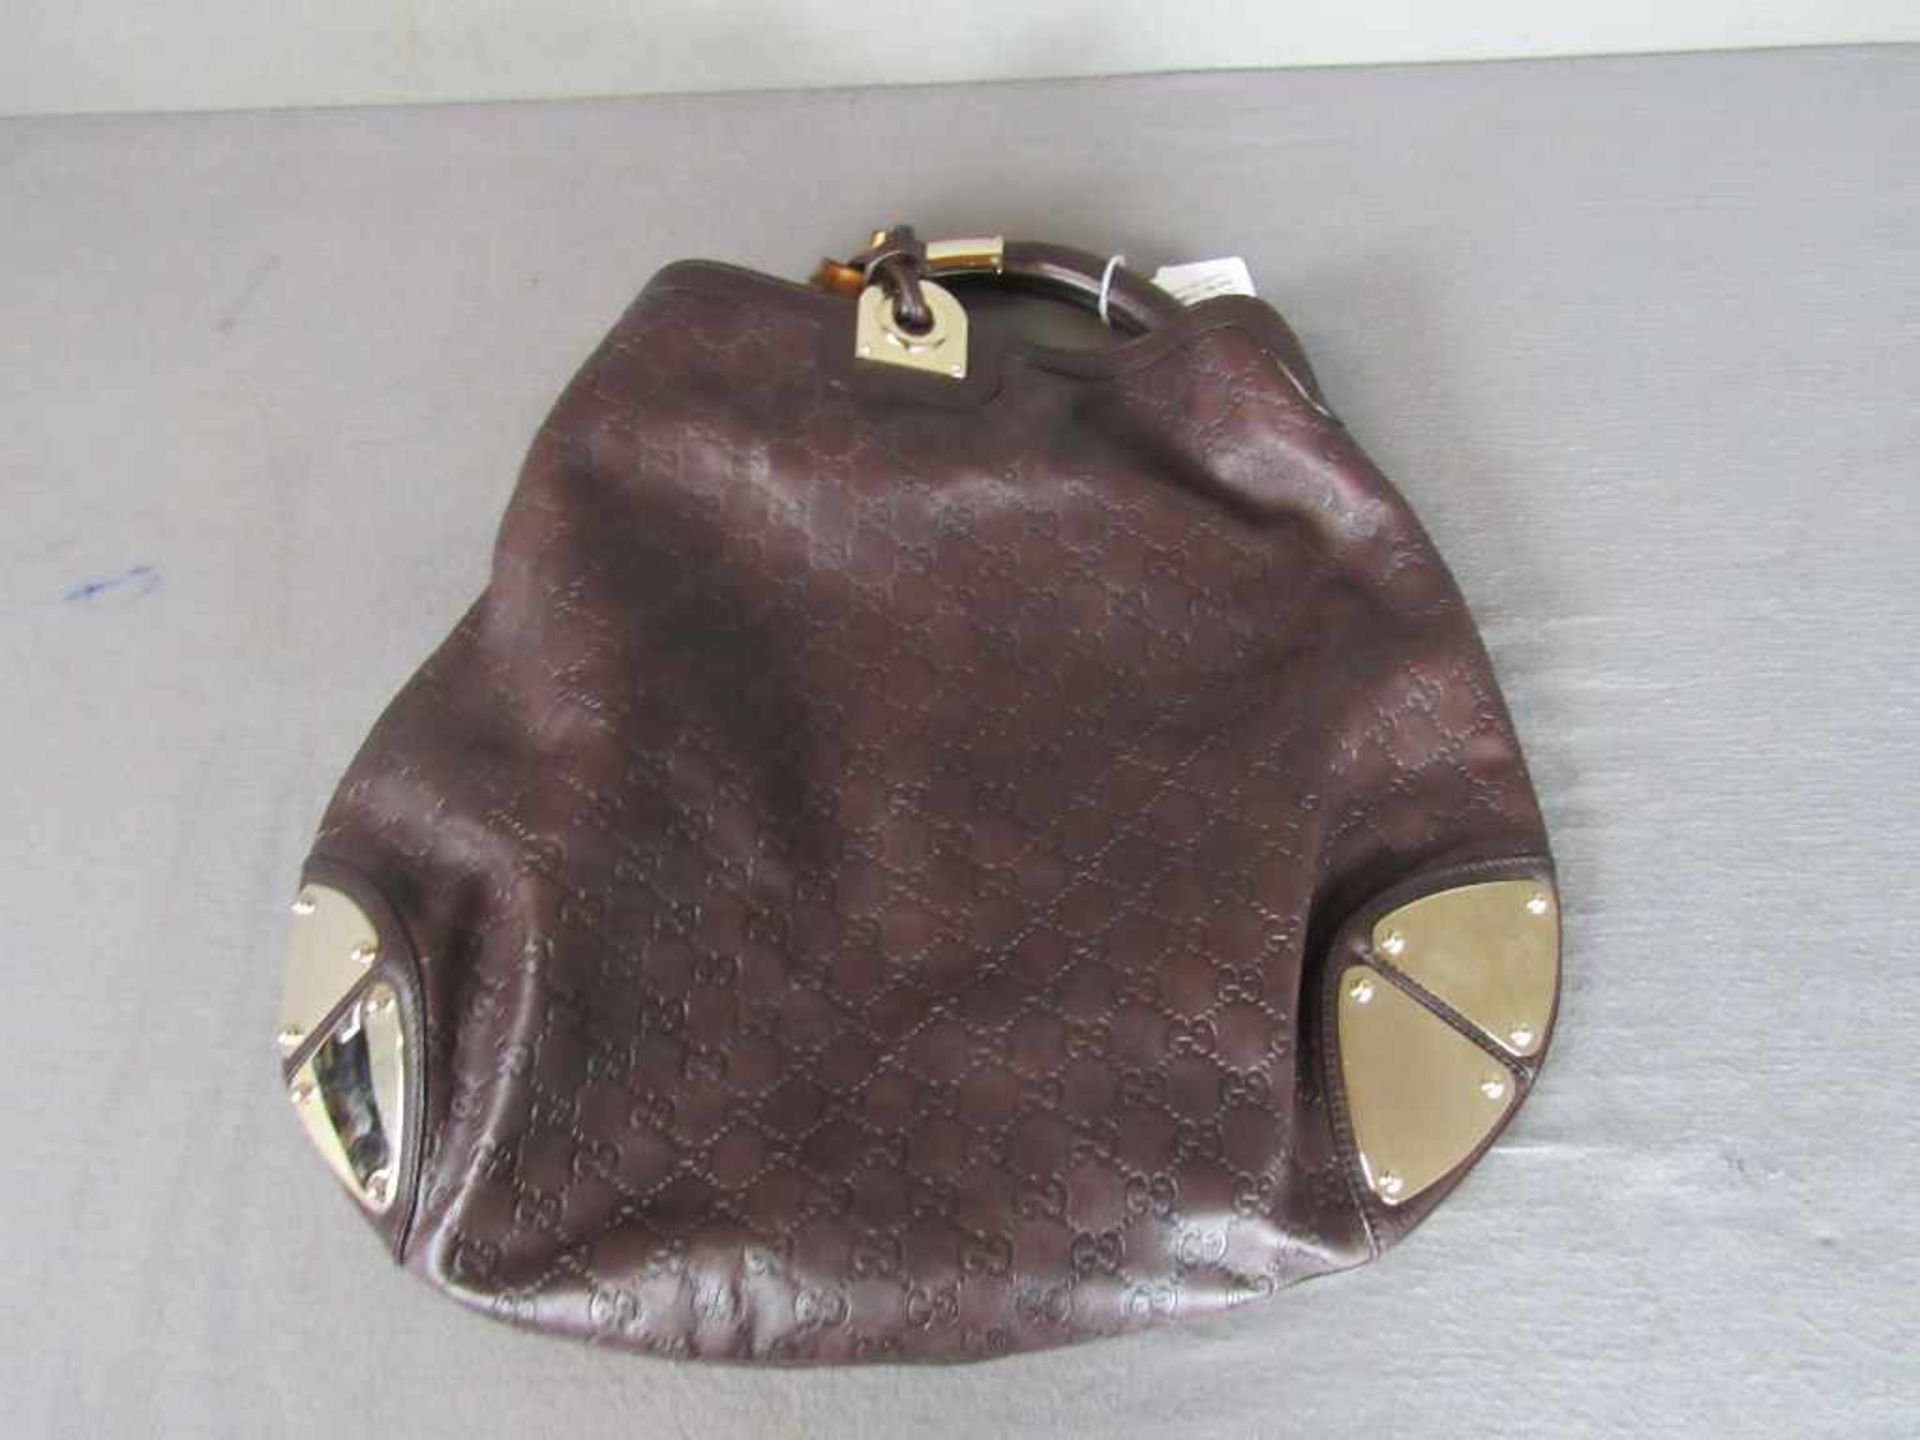 Handtasche Gucci geprägtes Leder ca.48x50cm- - -20.00 % buyer's premium on the hammer price19.00 %